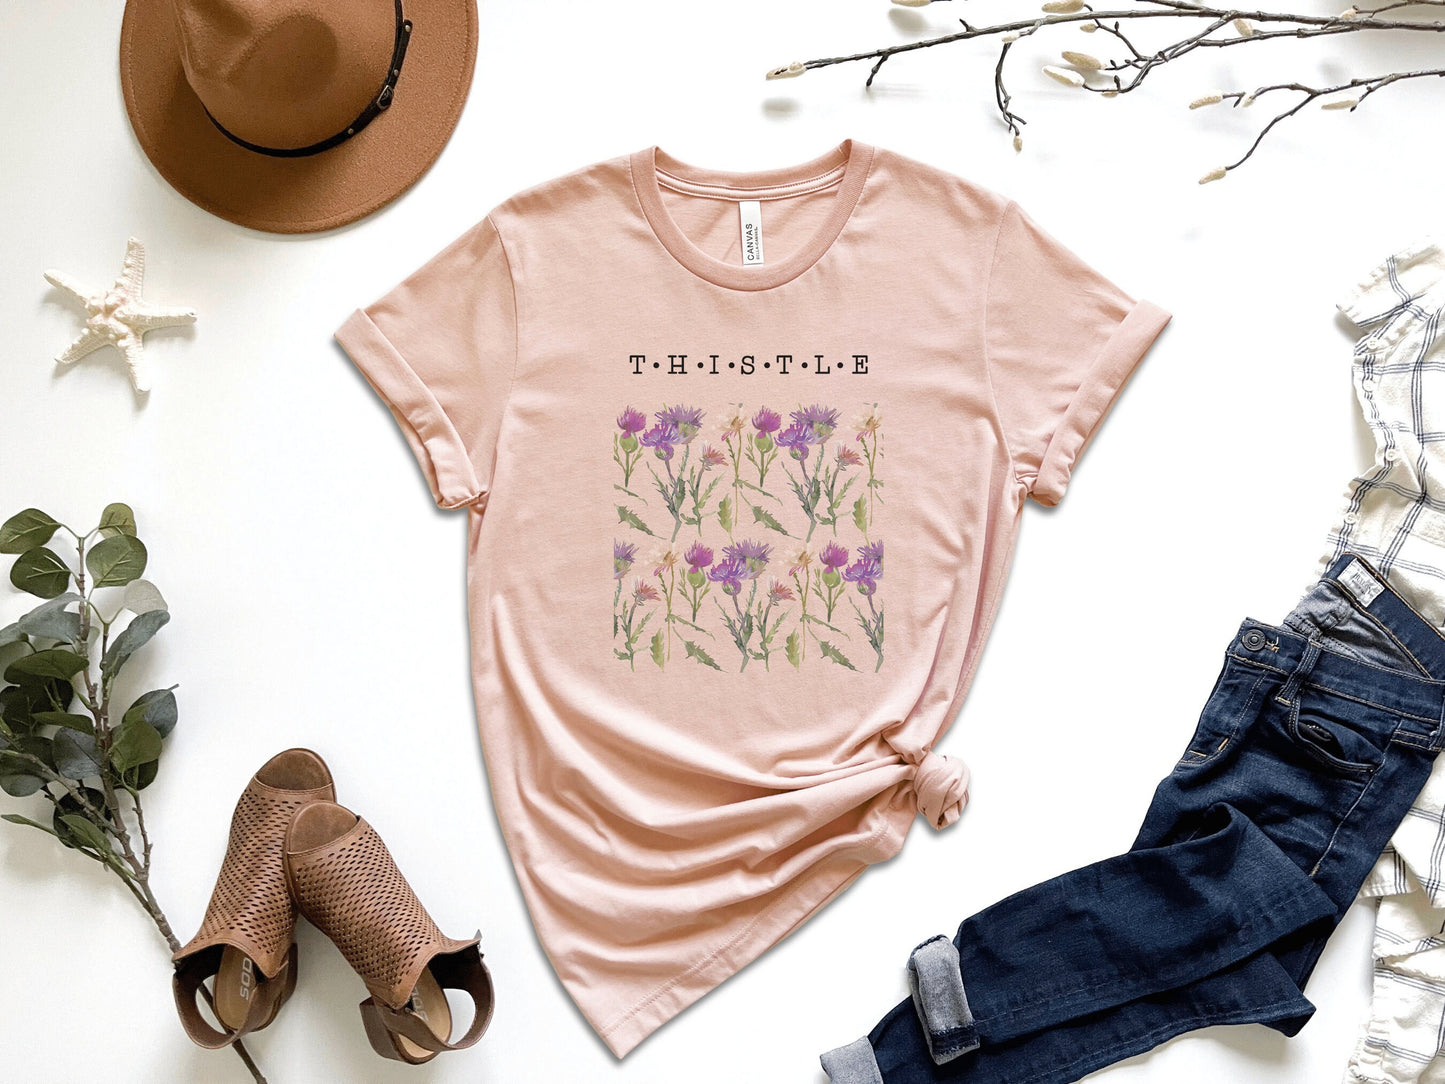 Thistles Botanical T-Shirt,Botanical tee, Wildflower Shirt, Garden shirt, Plant Shirt, Wildflower Tee, Women's Flower Tee, Plant Lover Gift